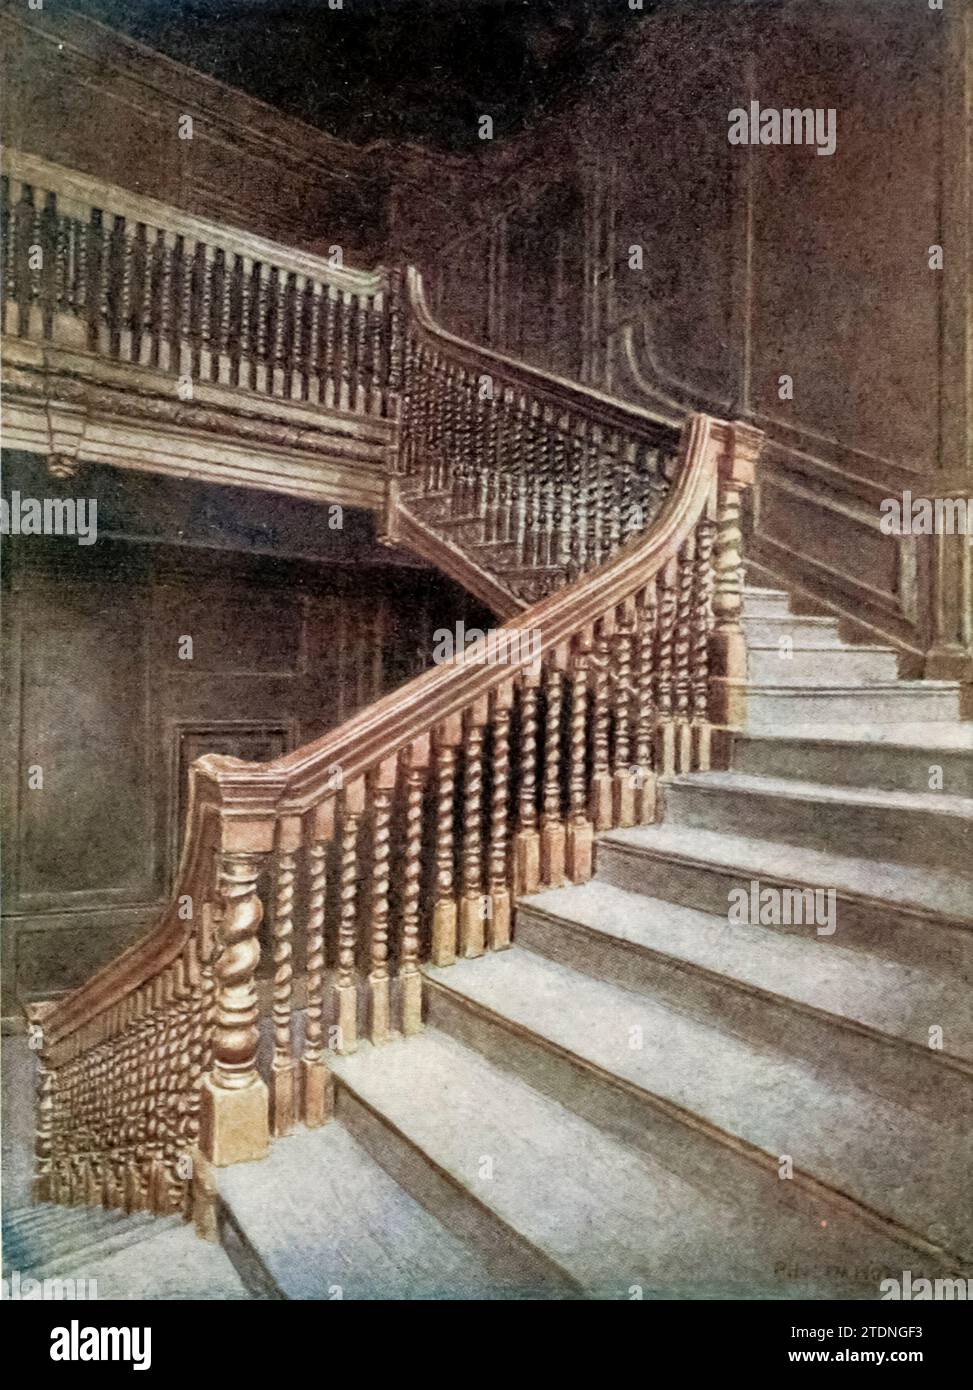 Staircase of No. 10 Austin Friars, 1895 aus dem Buch London Vanished and Vanishing von Norman, Philip, 1842-1931 veröffentlicht 1905 in London von Adam & Charles Black Philip E Norman FSA (9. Juli 1842–17. Mai 1931) war ein britischer Künstler, Autor und Antiquar. Stockfoto